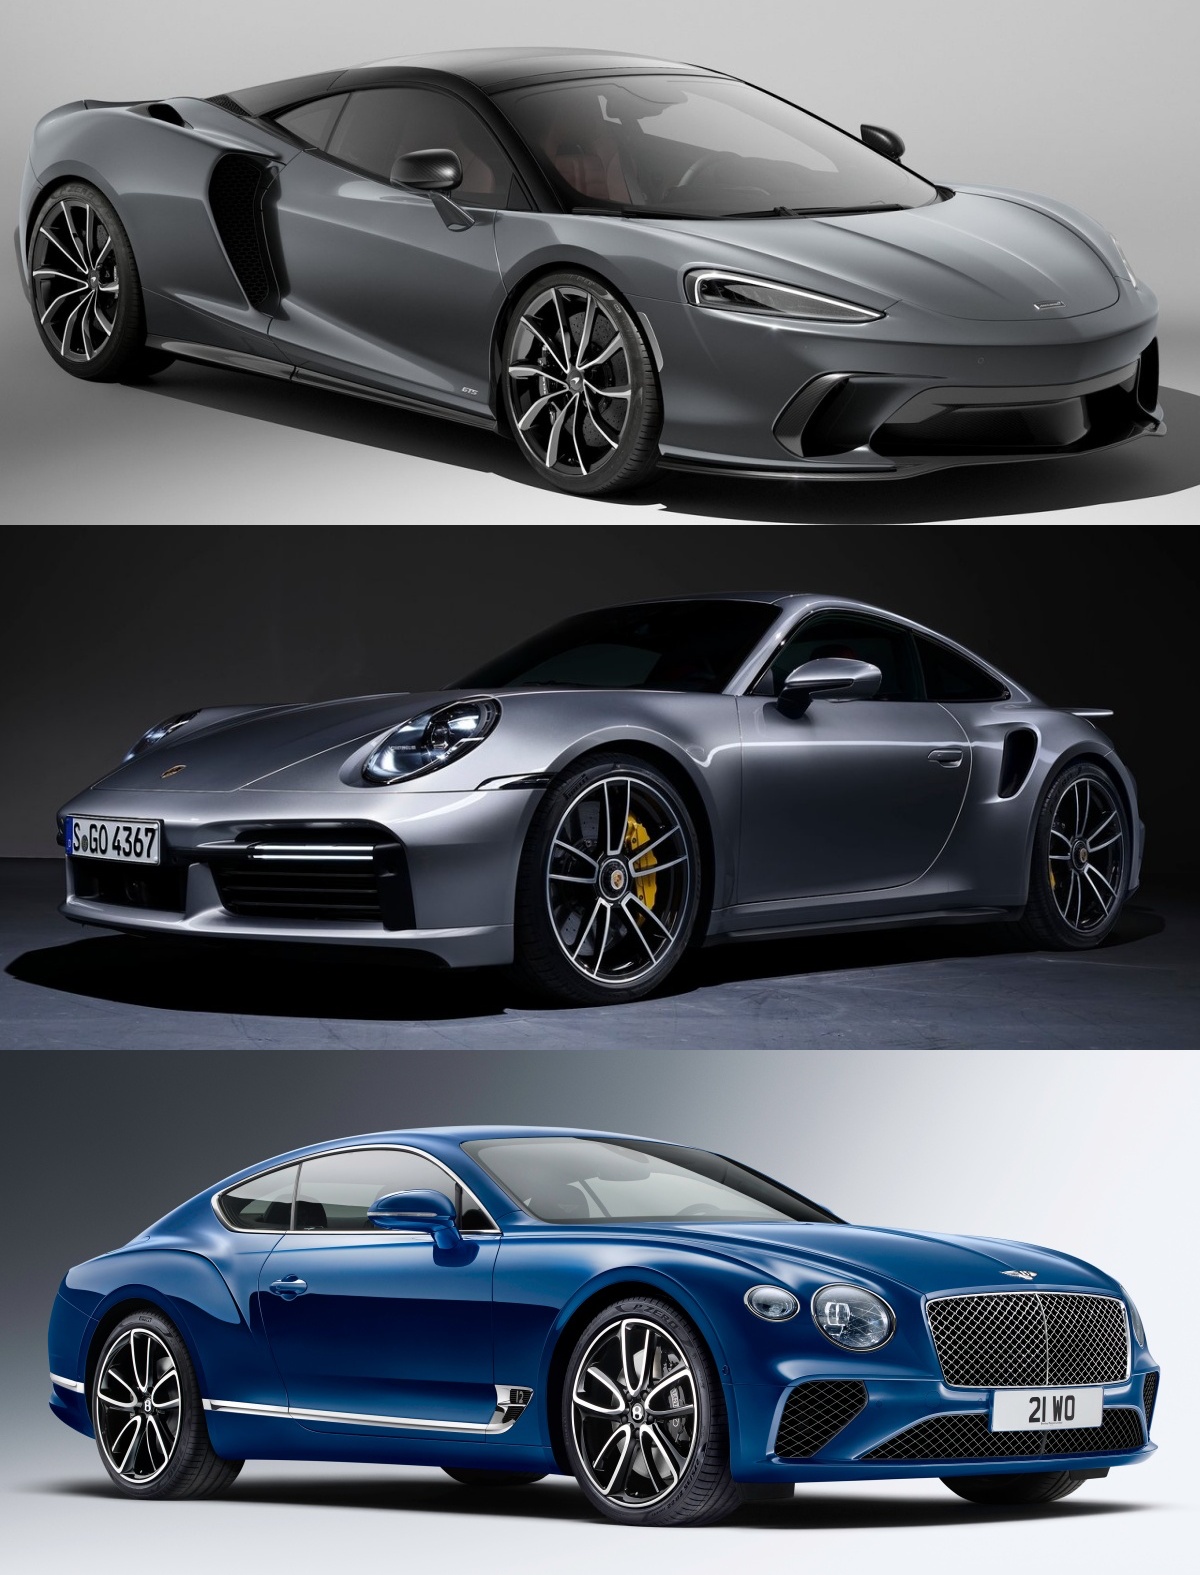 '맥라렌 GTS', '포르쉐 911 터보 S', '벤틀리 컨티넨탈 GT'의 사진이 순서대로 나열되어 있다.